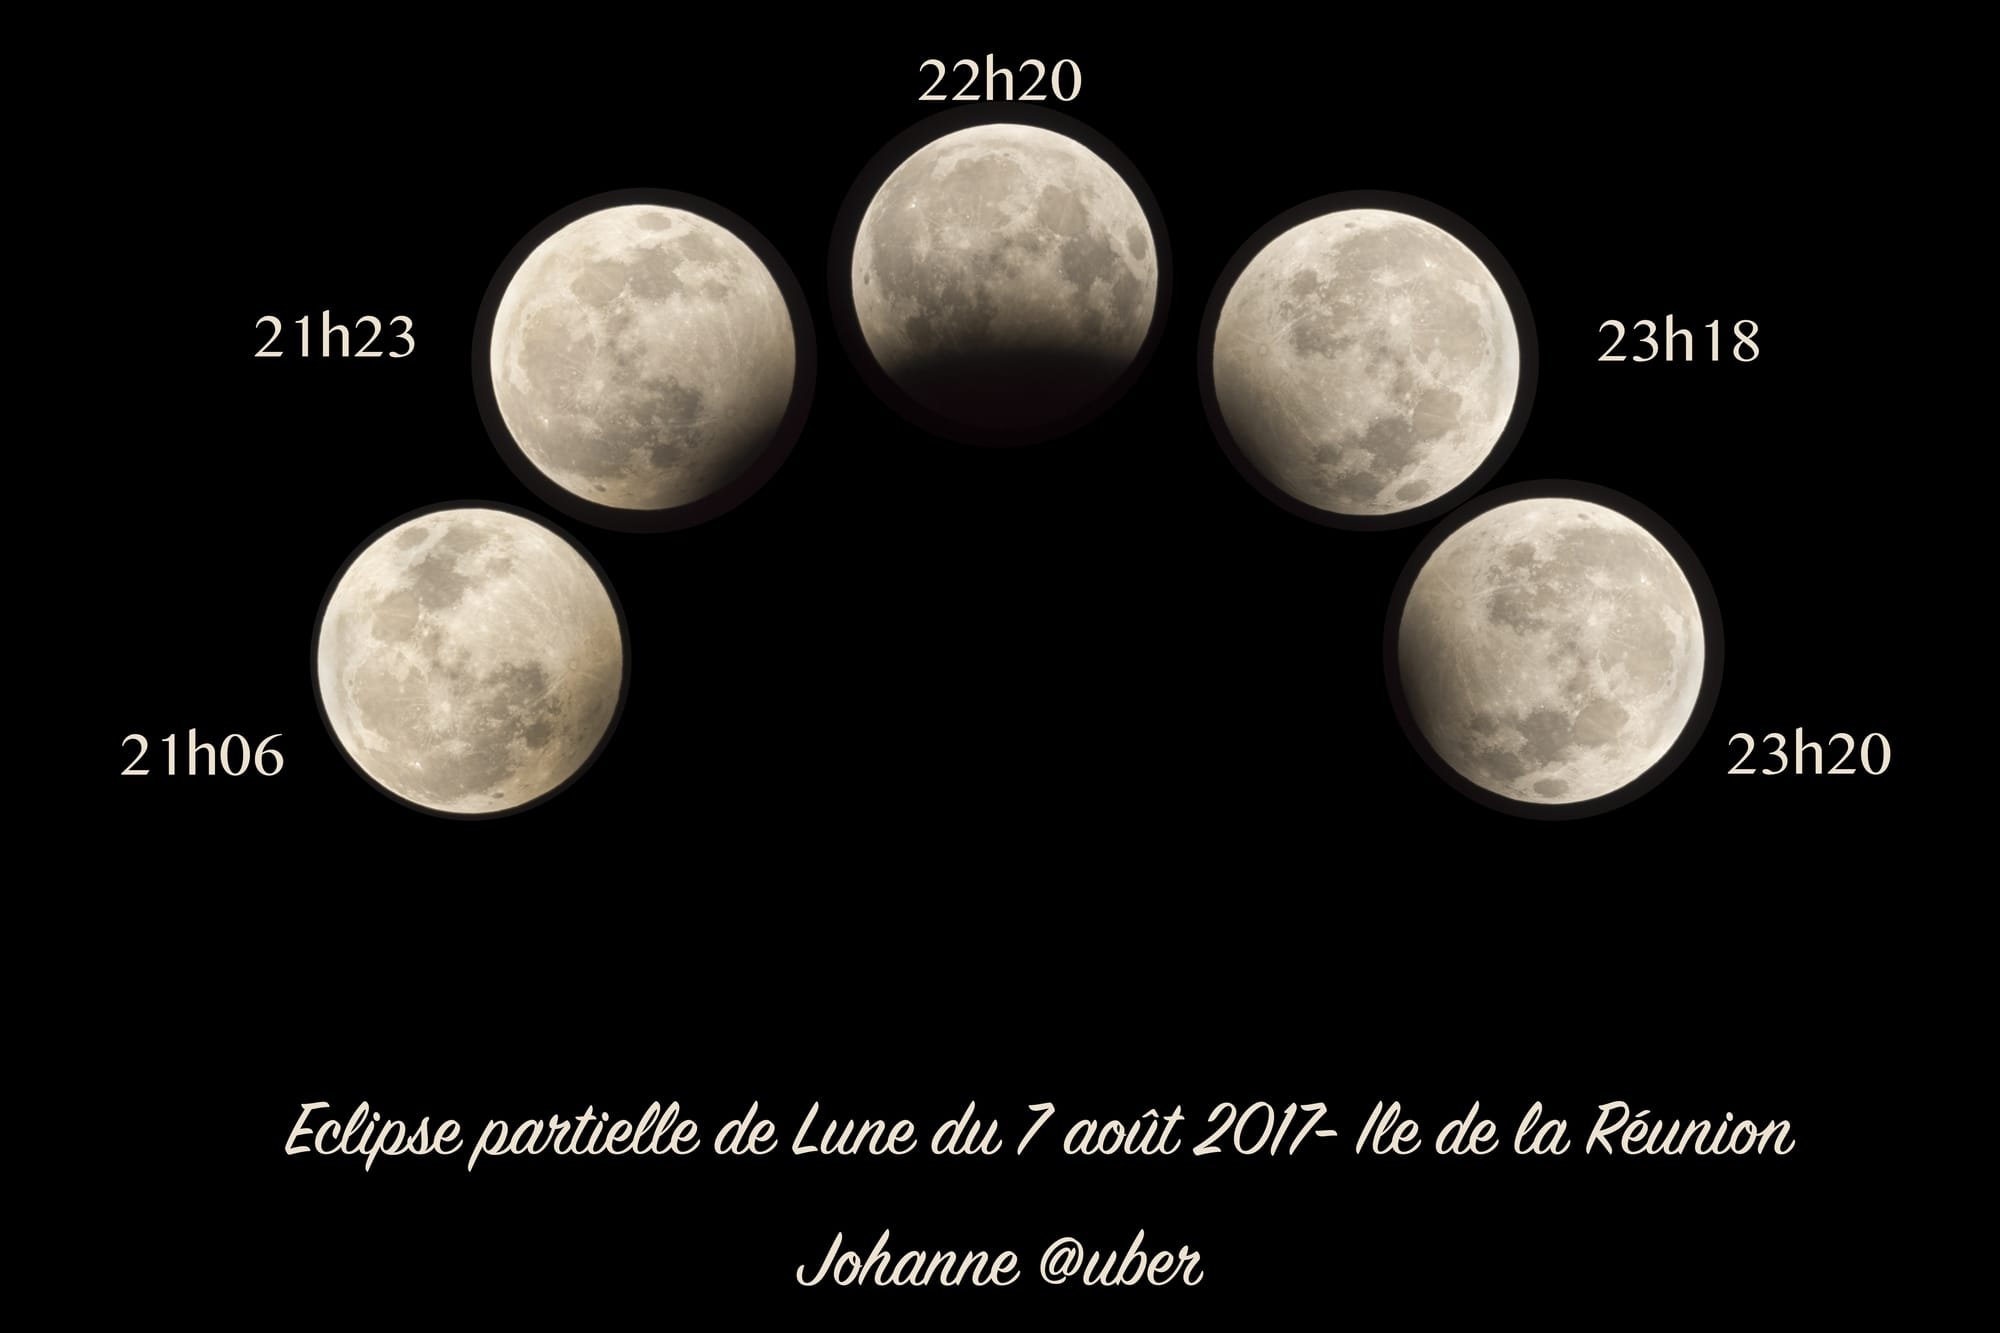 Eclipse partielle de Lune - crédit Johanne Aubert